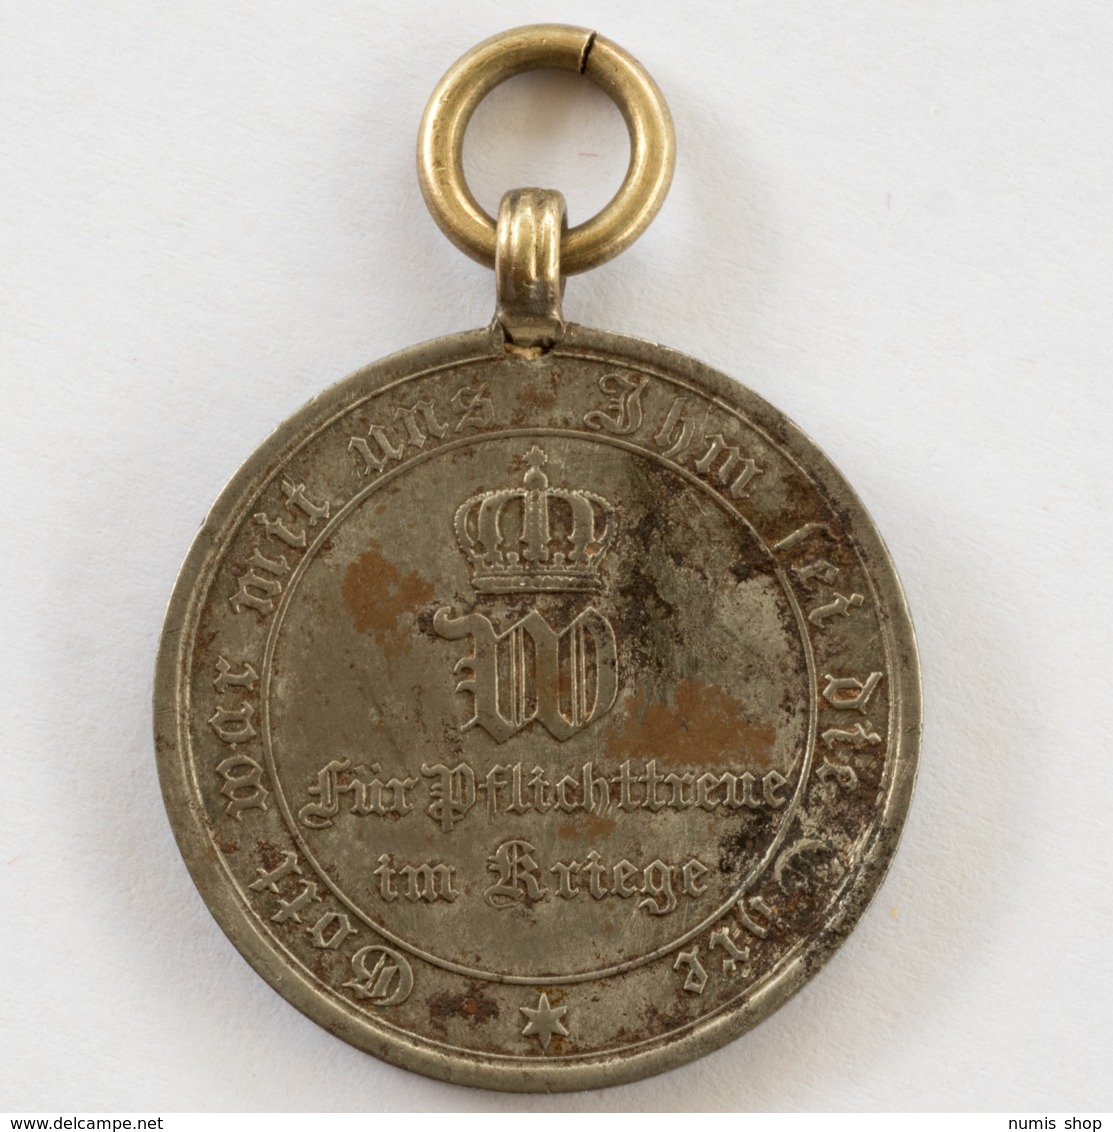 GERMANY - EMPIRE - Medaille - Für Pflichttreue Im Kriege - 1870 / 71 - #962 - Germania